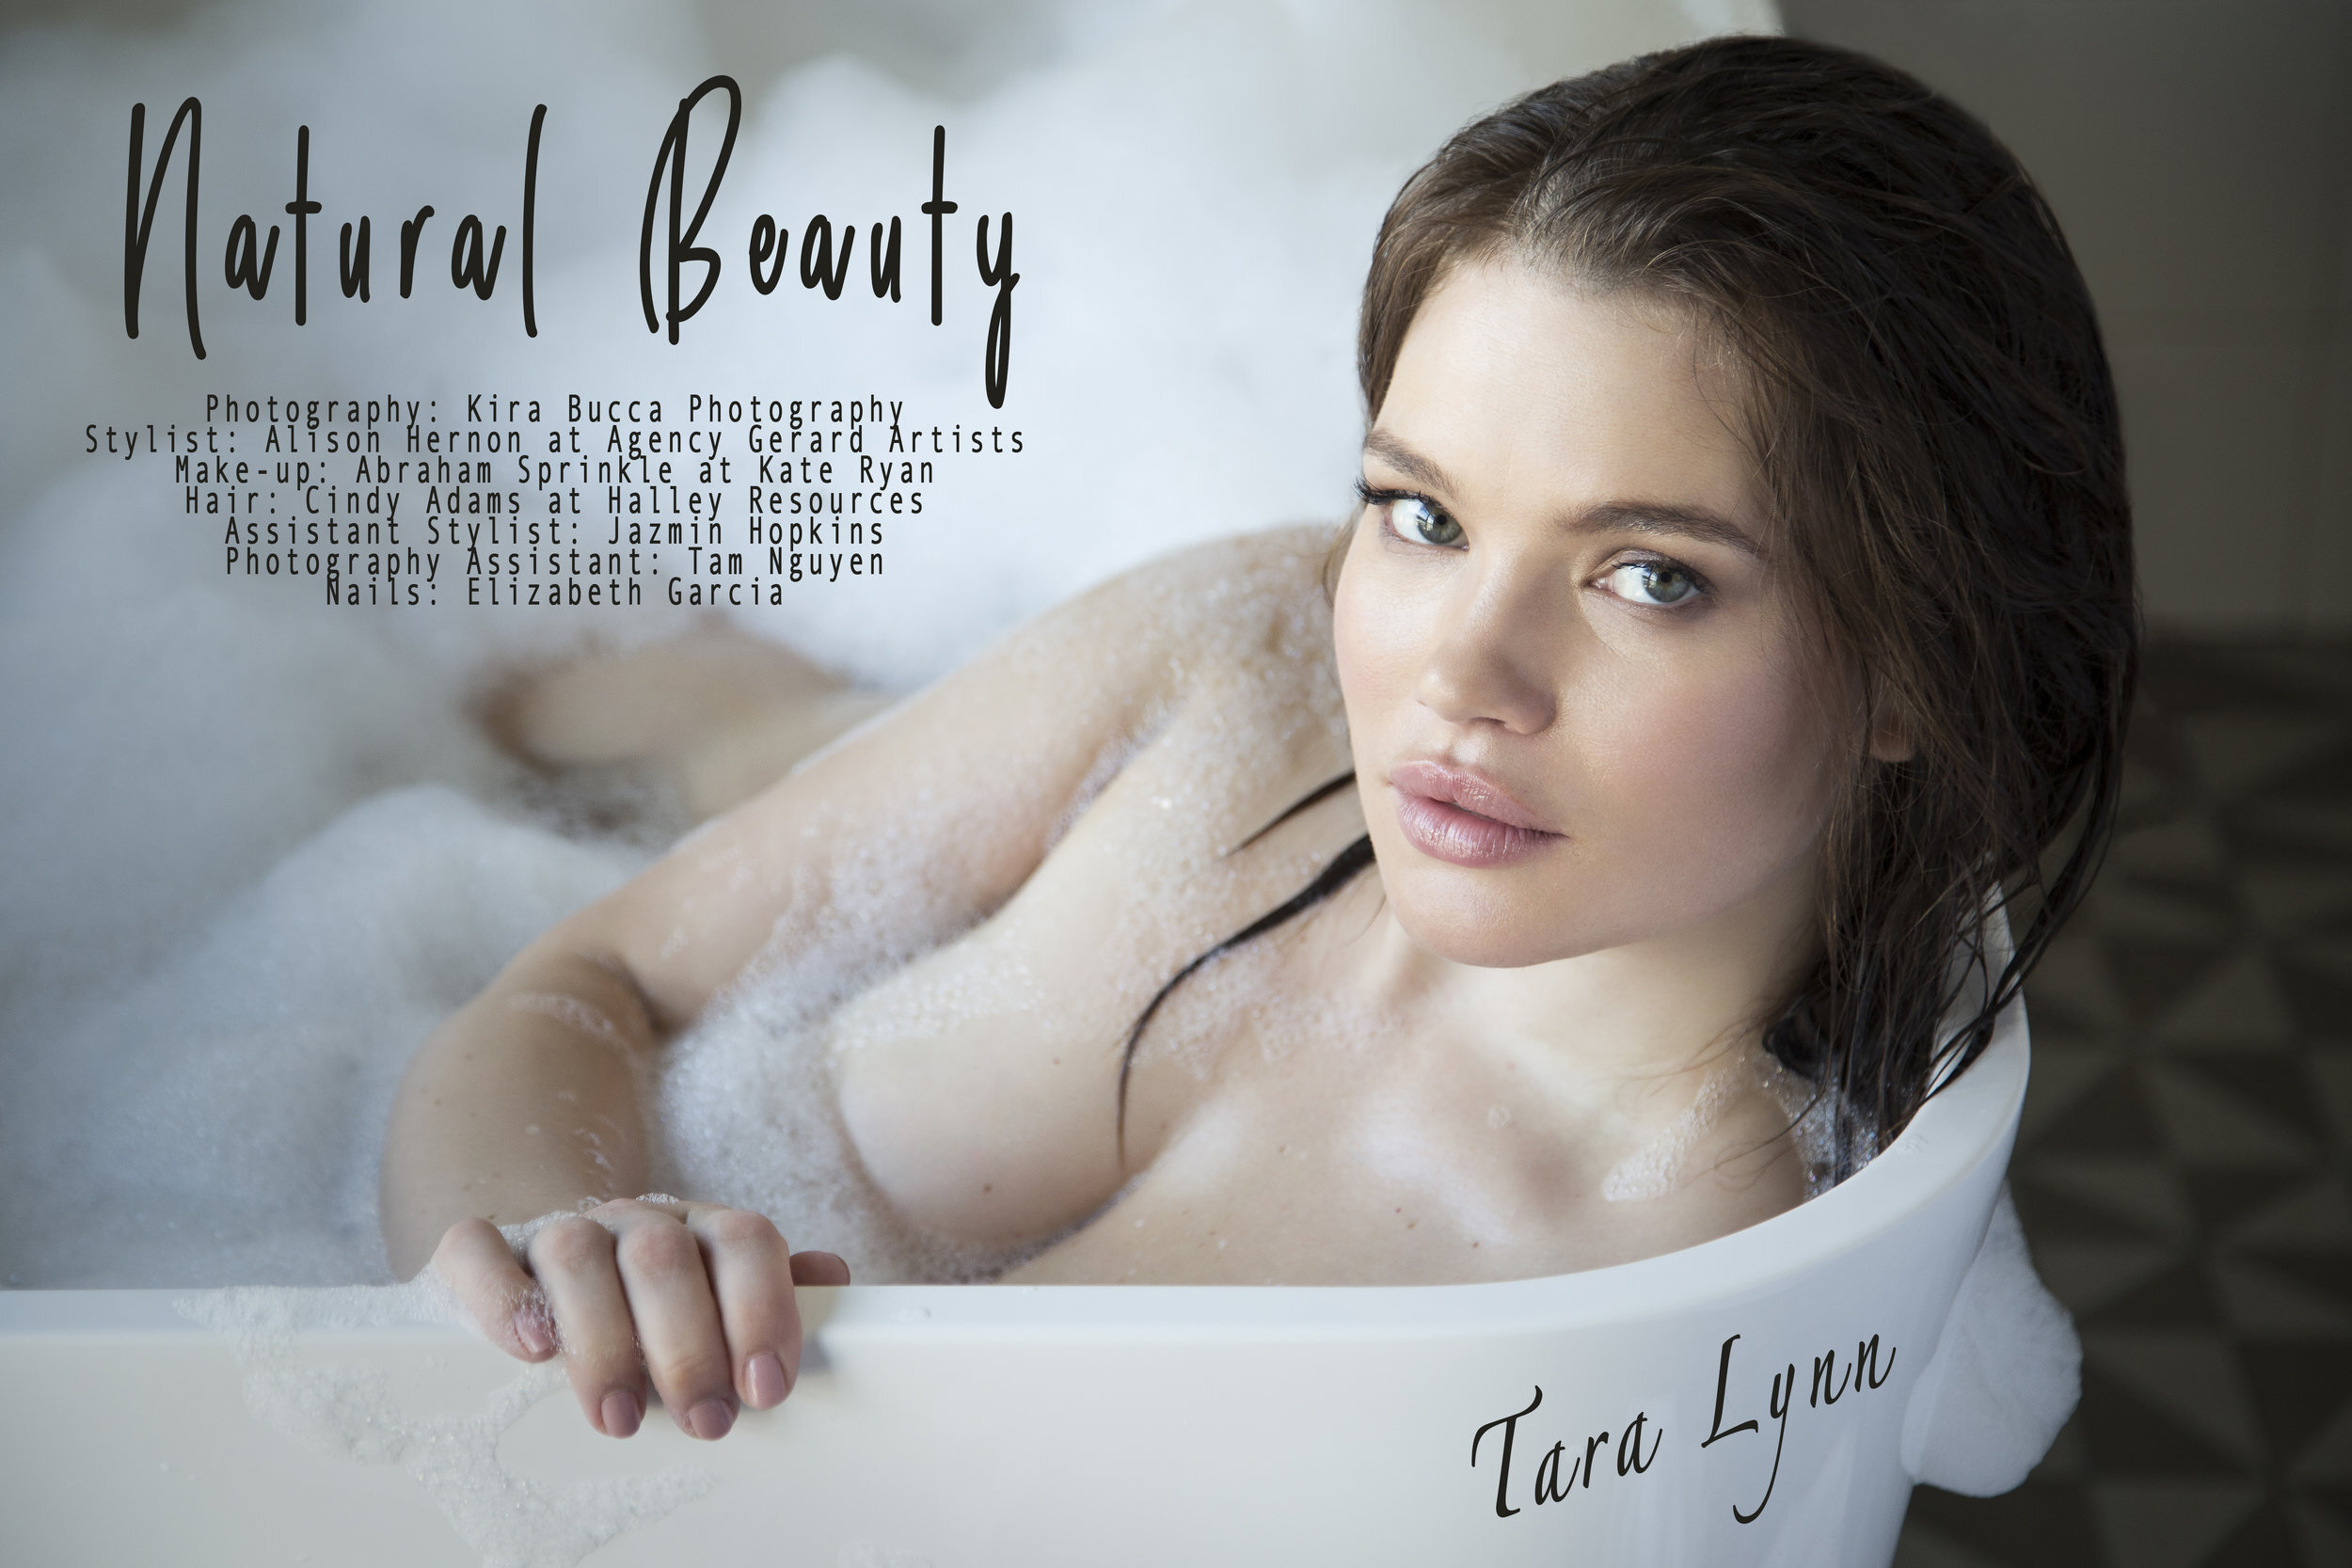 Tara lynn sexy